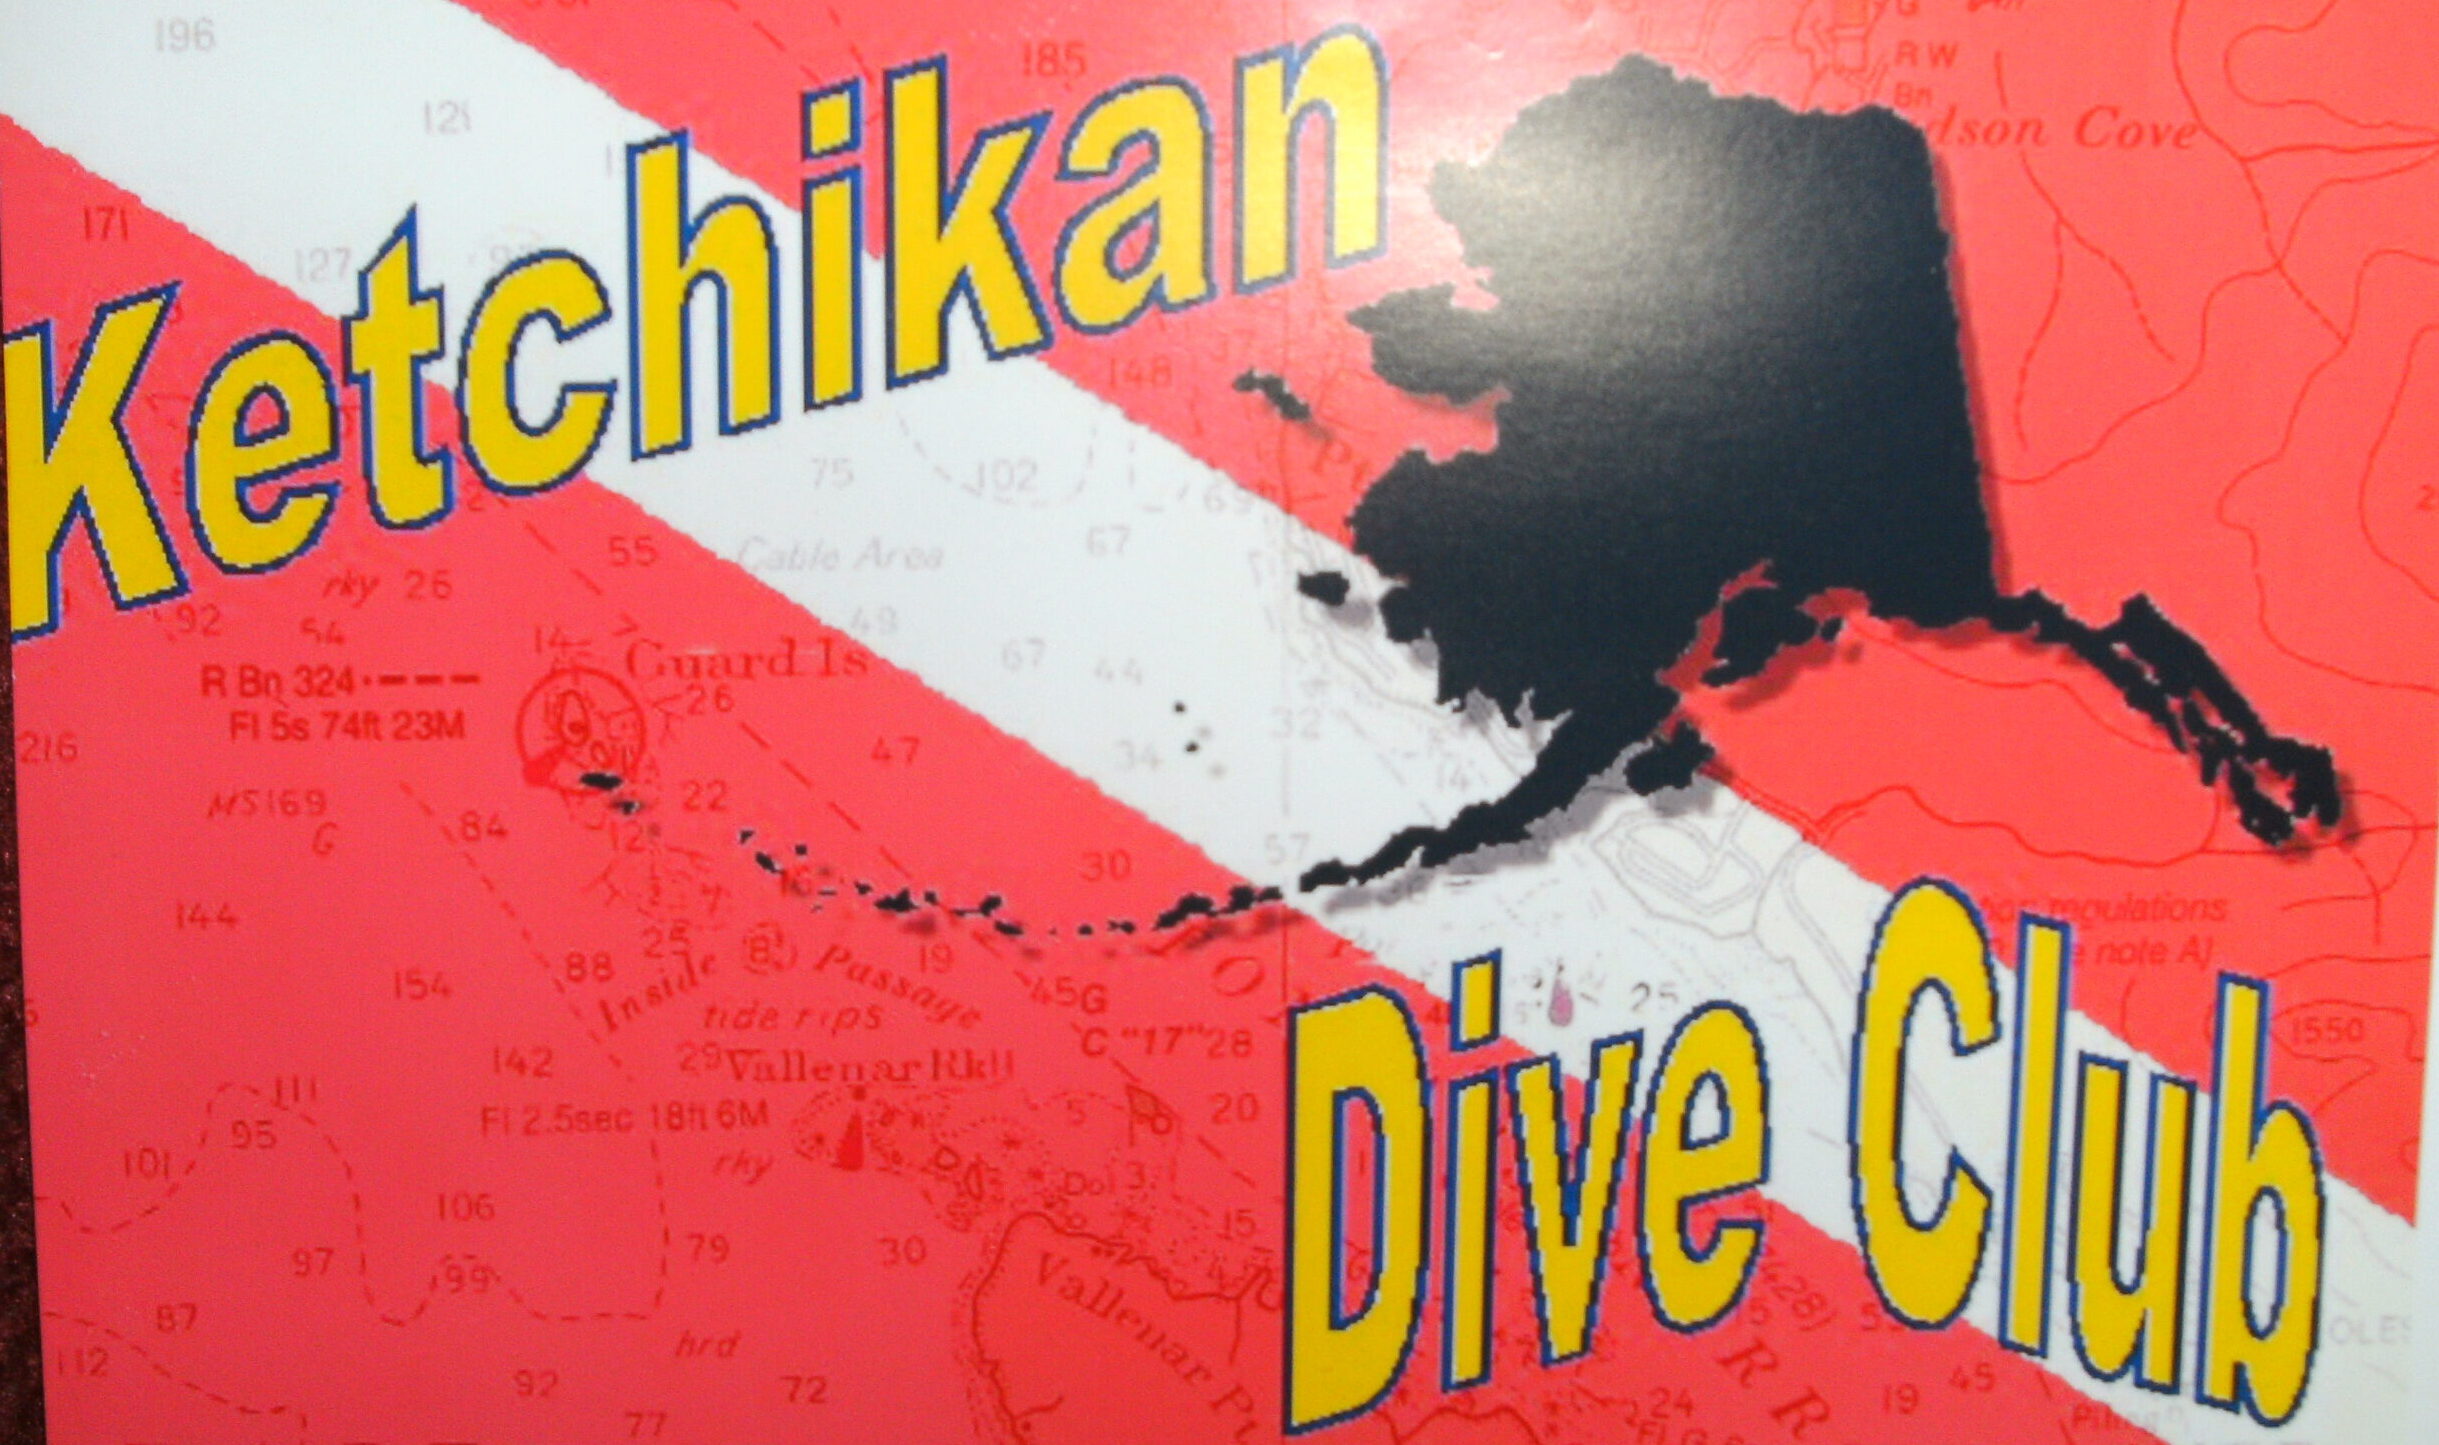 Ketchikan Dive Club